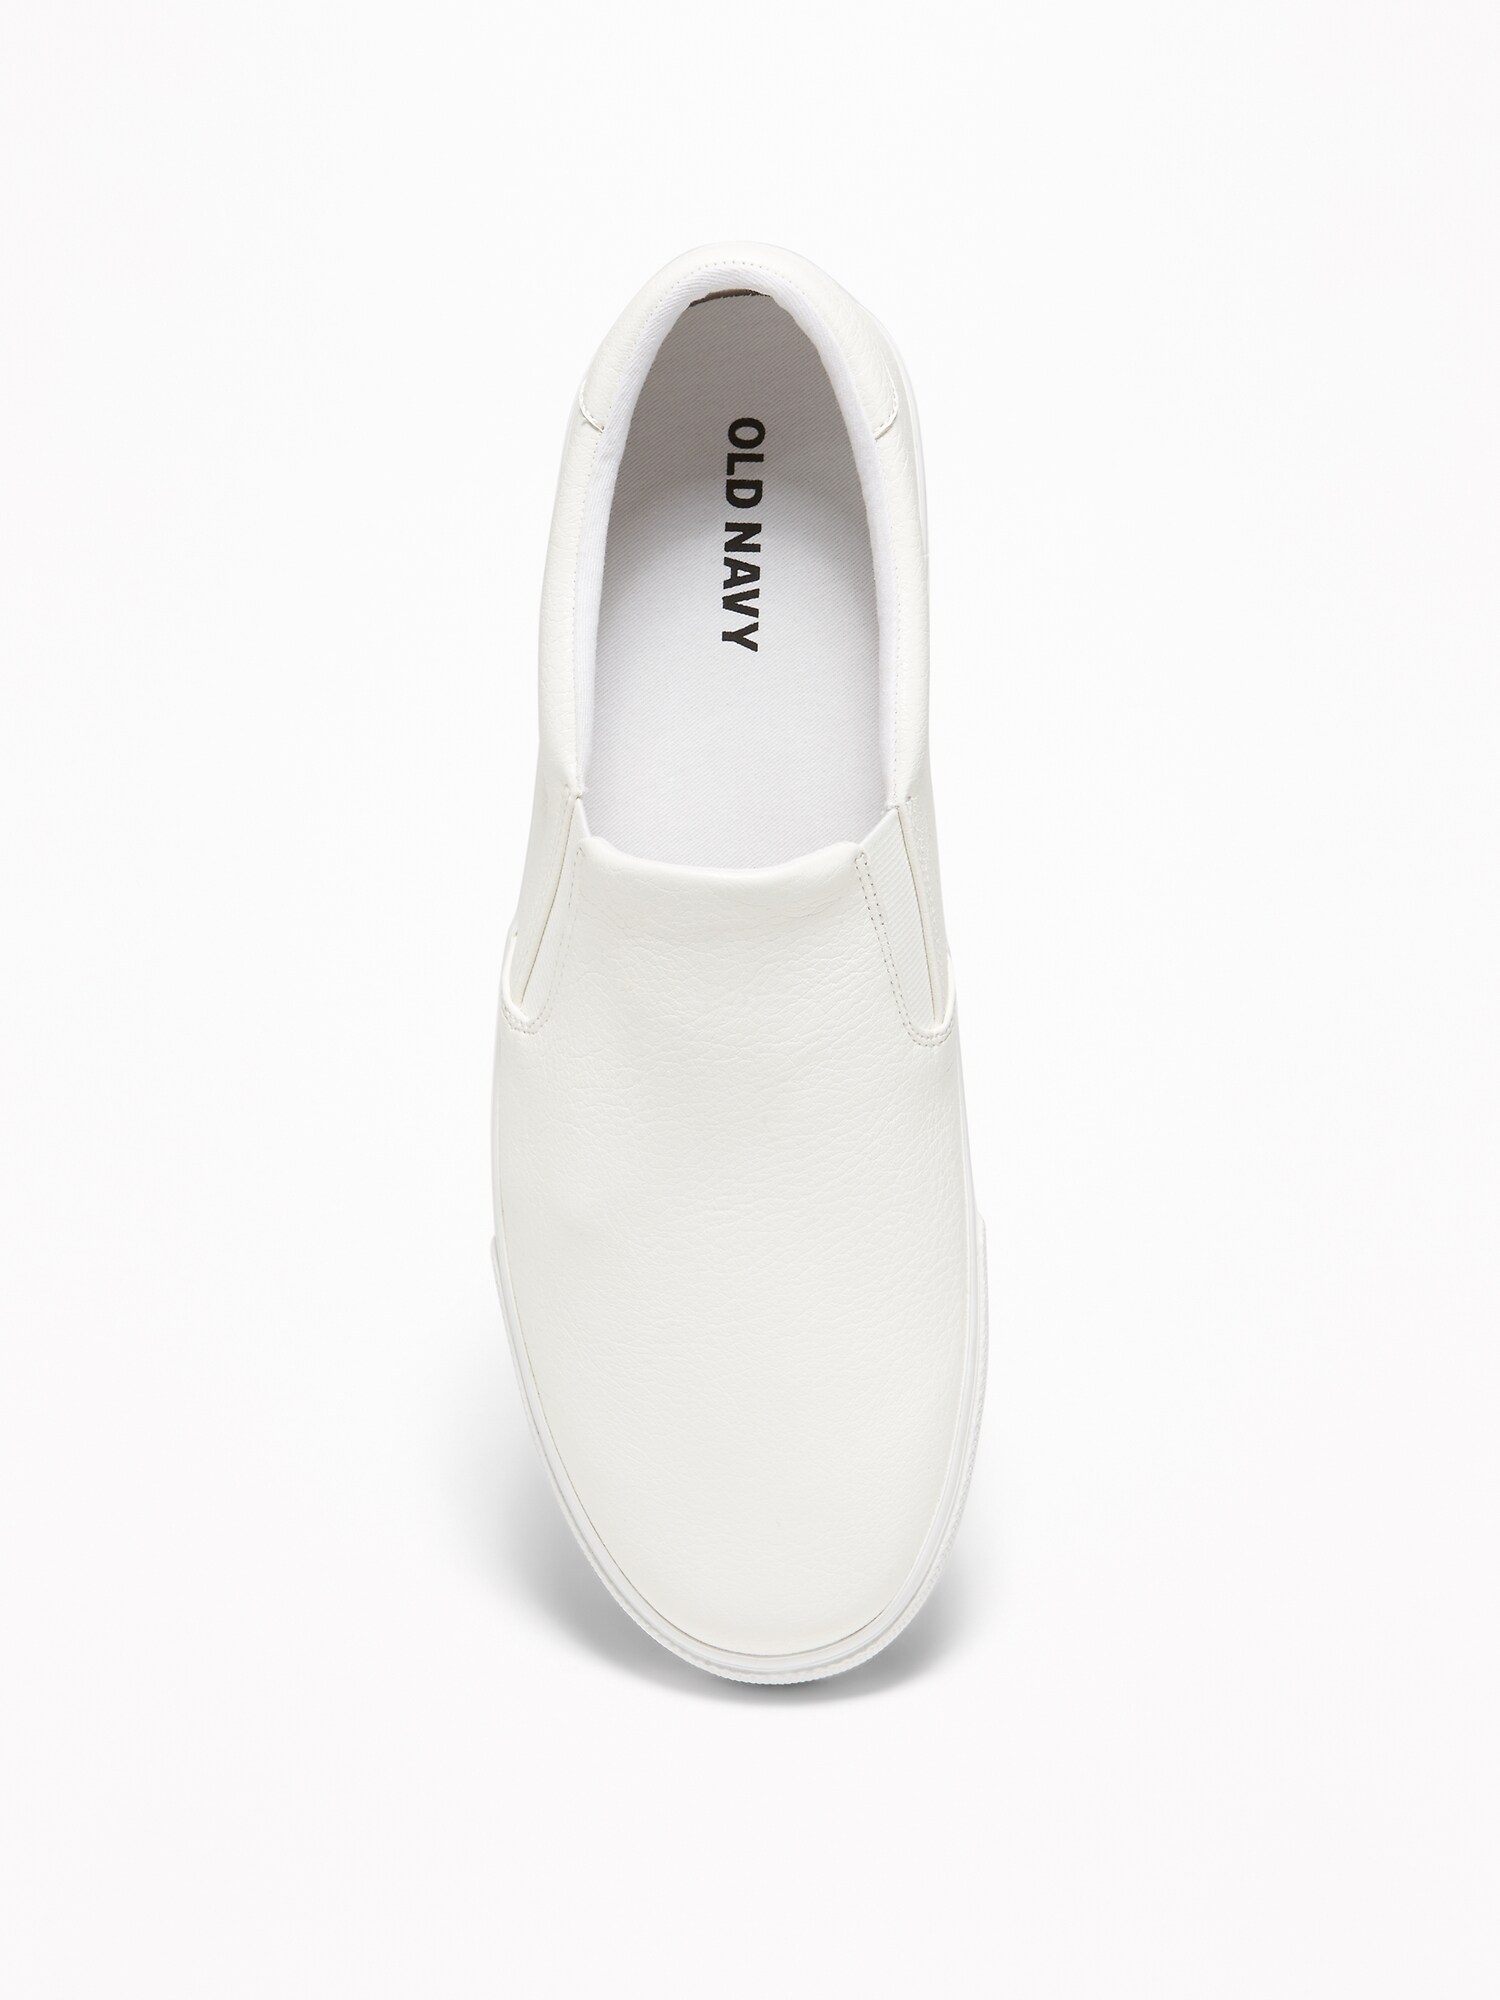 white slip on shoes for men